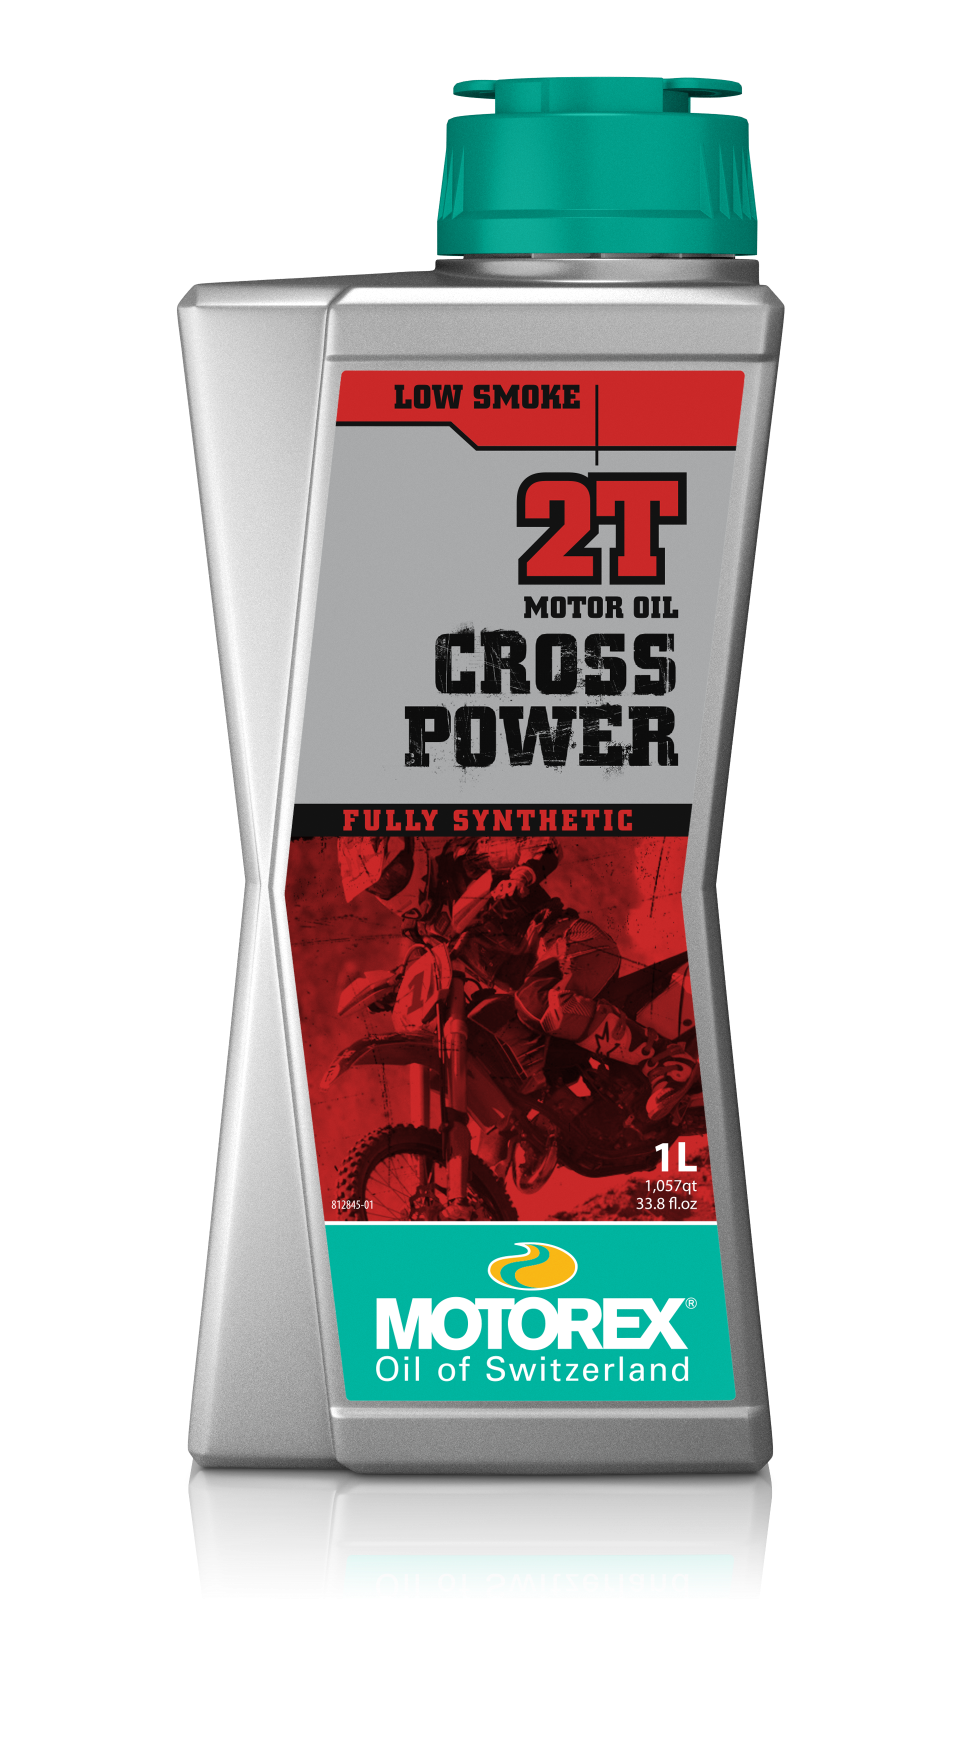 CROSS POWER 2T – MOTOREX USA